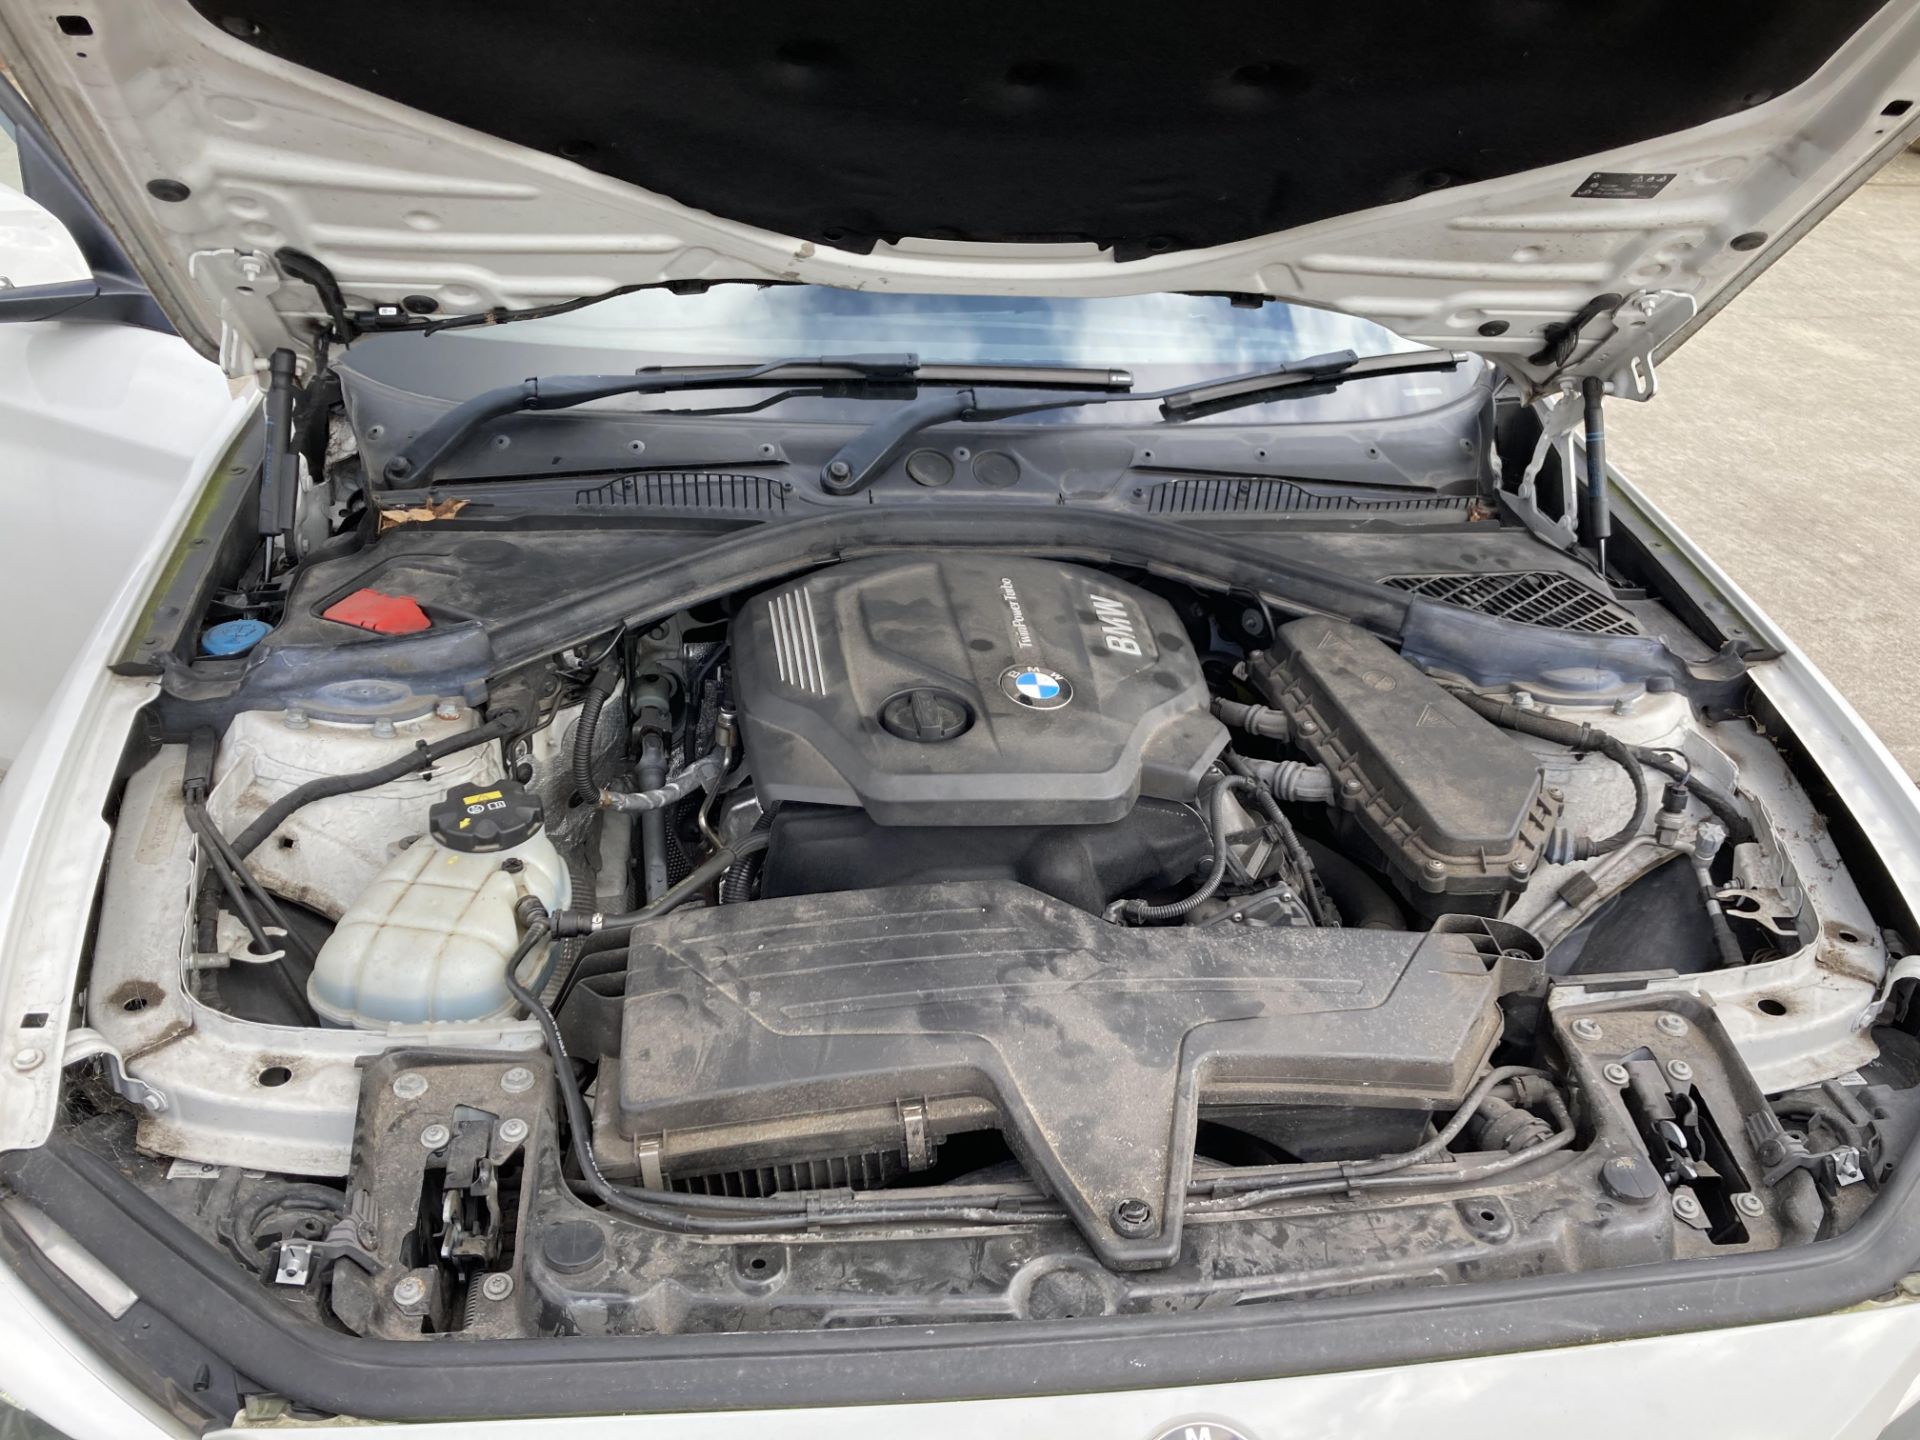 BMW 116d five door hatchback - diesel - white - dark grey cloth interior, with alloy wheels. - Image 6 of 11